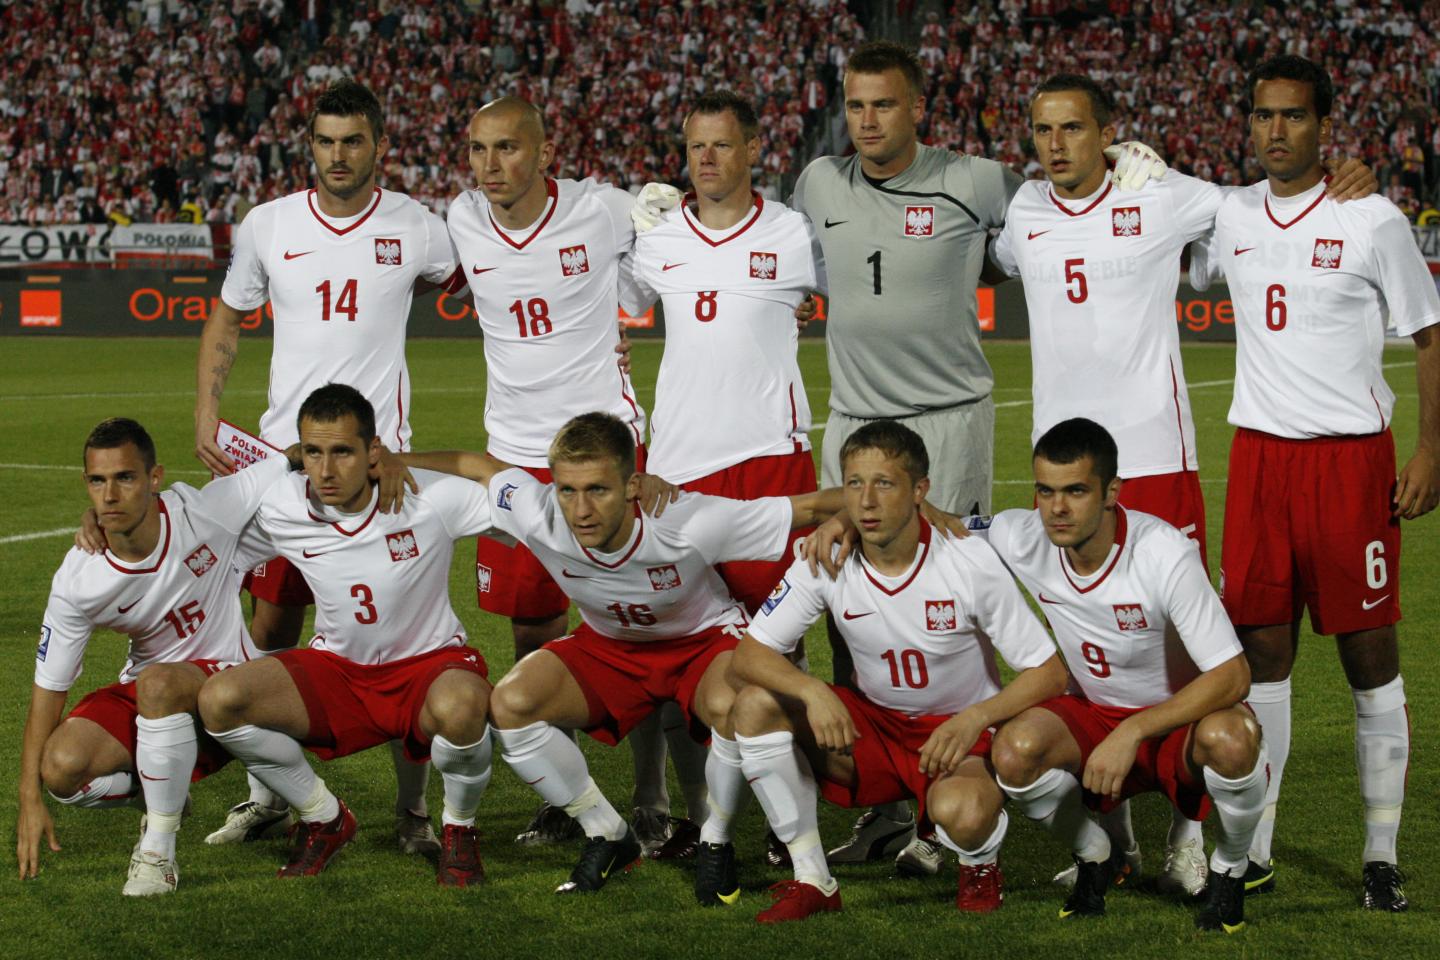 Polska - Irlandia Północna 1:1, 05.09.2009